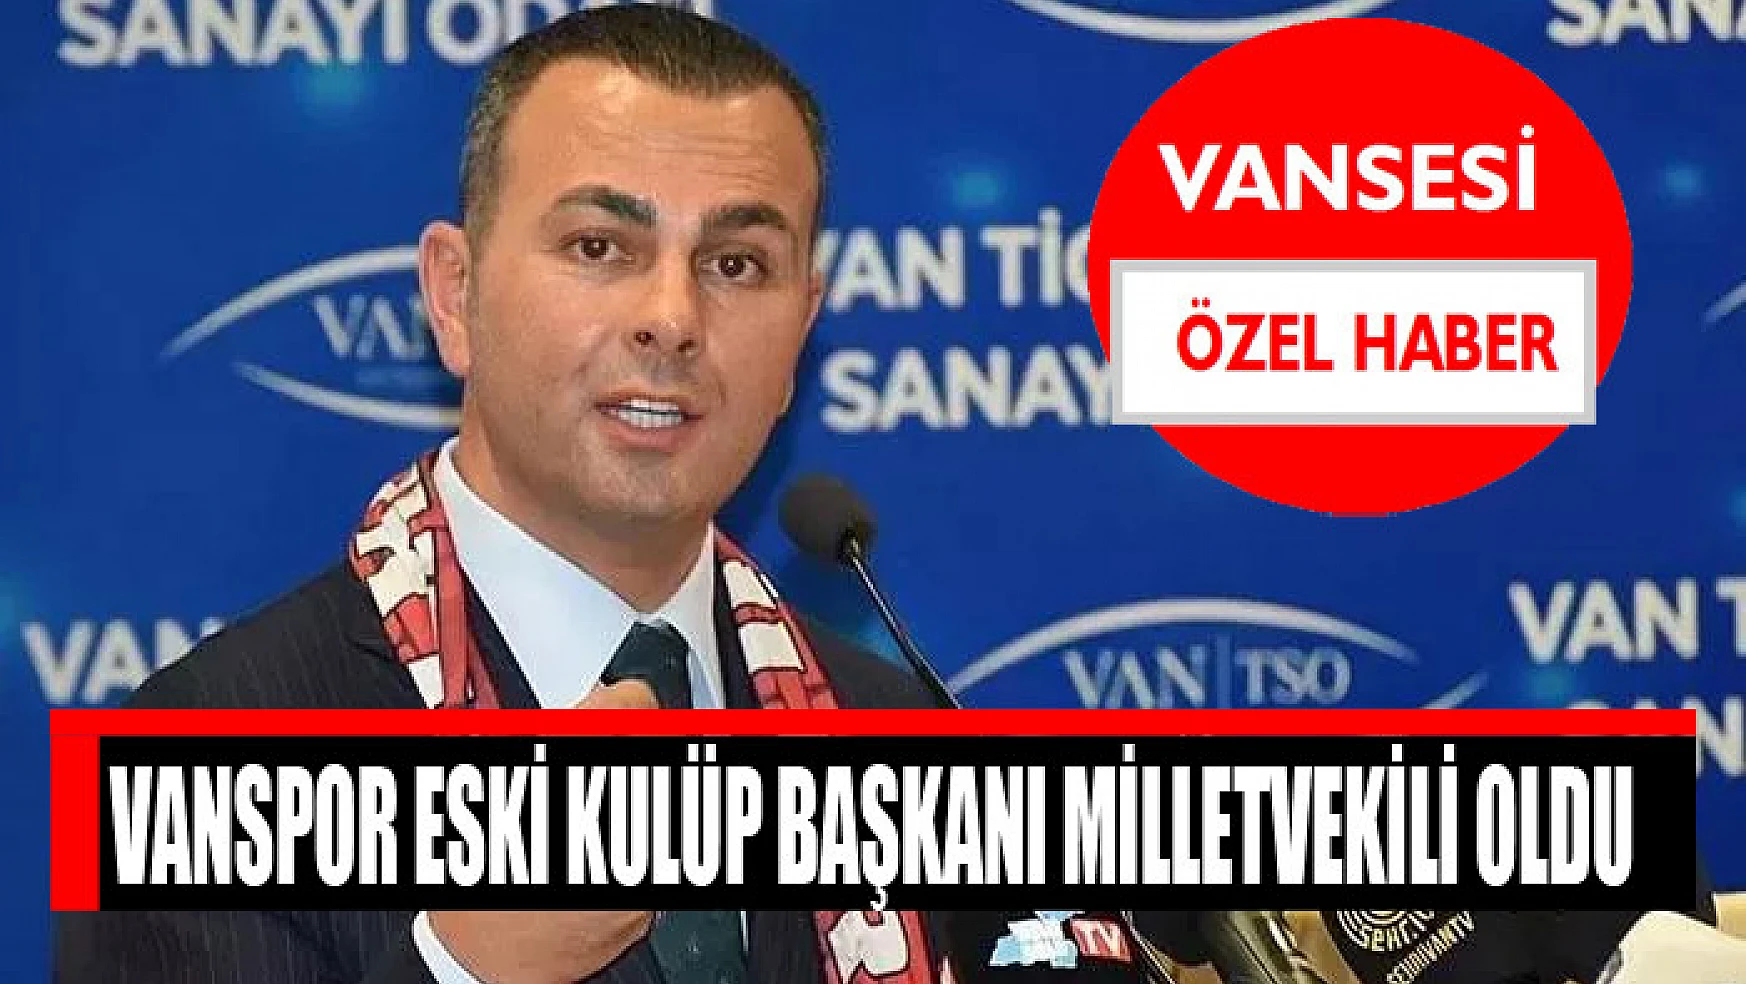 Vanspor eski kulüp başkanı Seyithan İzsiz milletvekili oldu